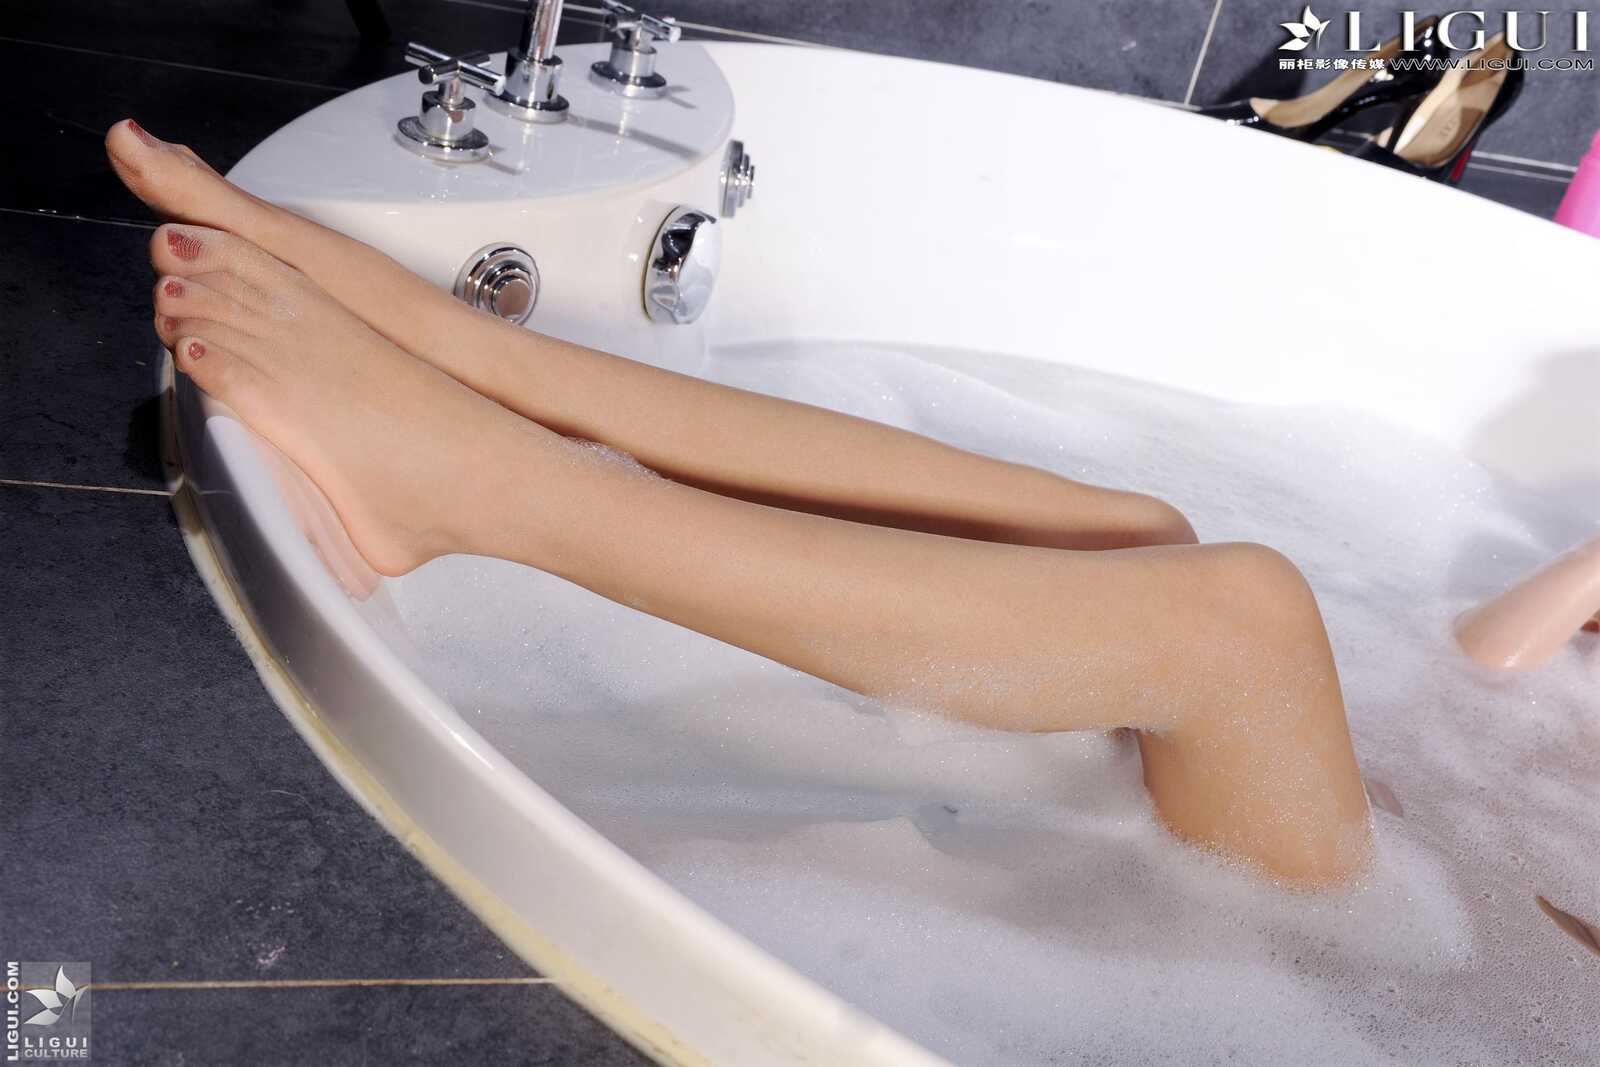 丽柜LiGui Model 文欣《浴室浴巾裹胸湿身》 美腿